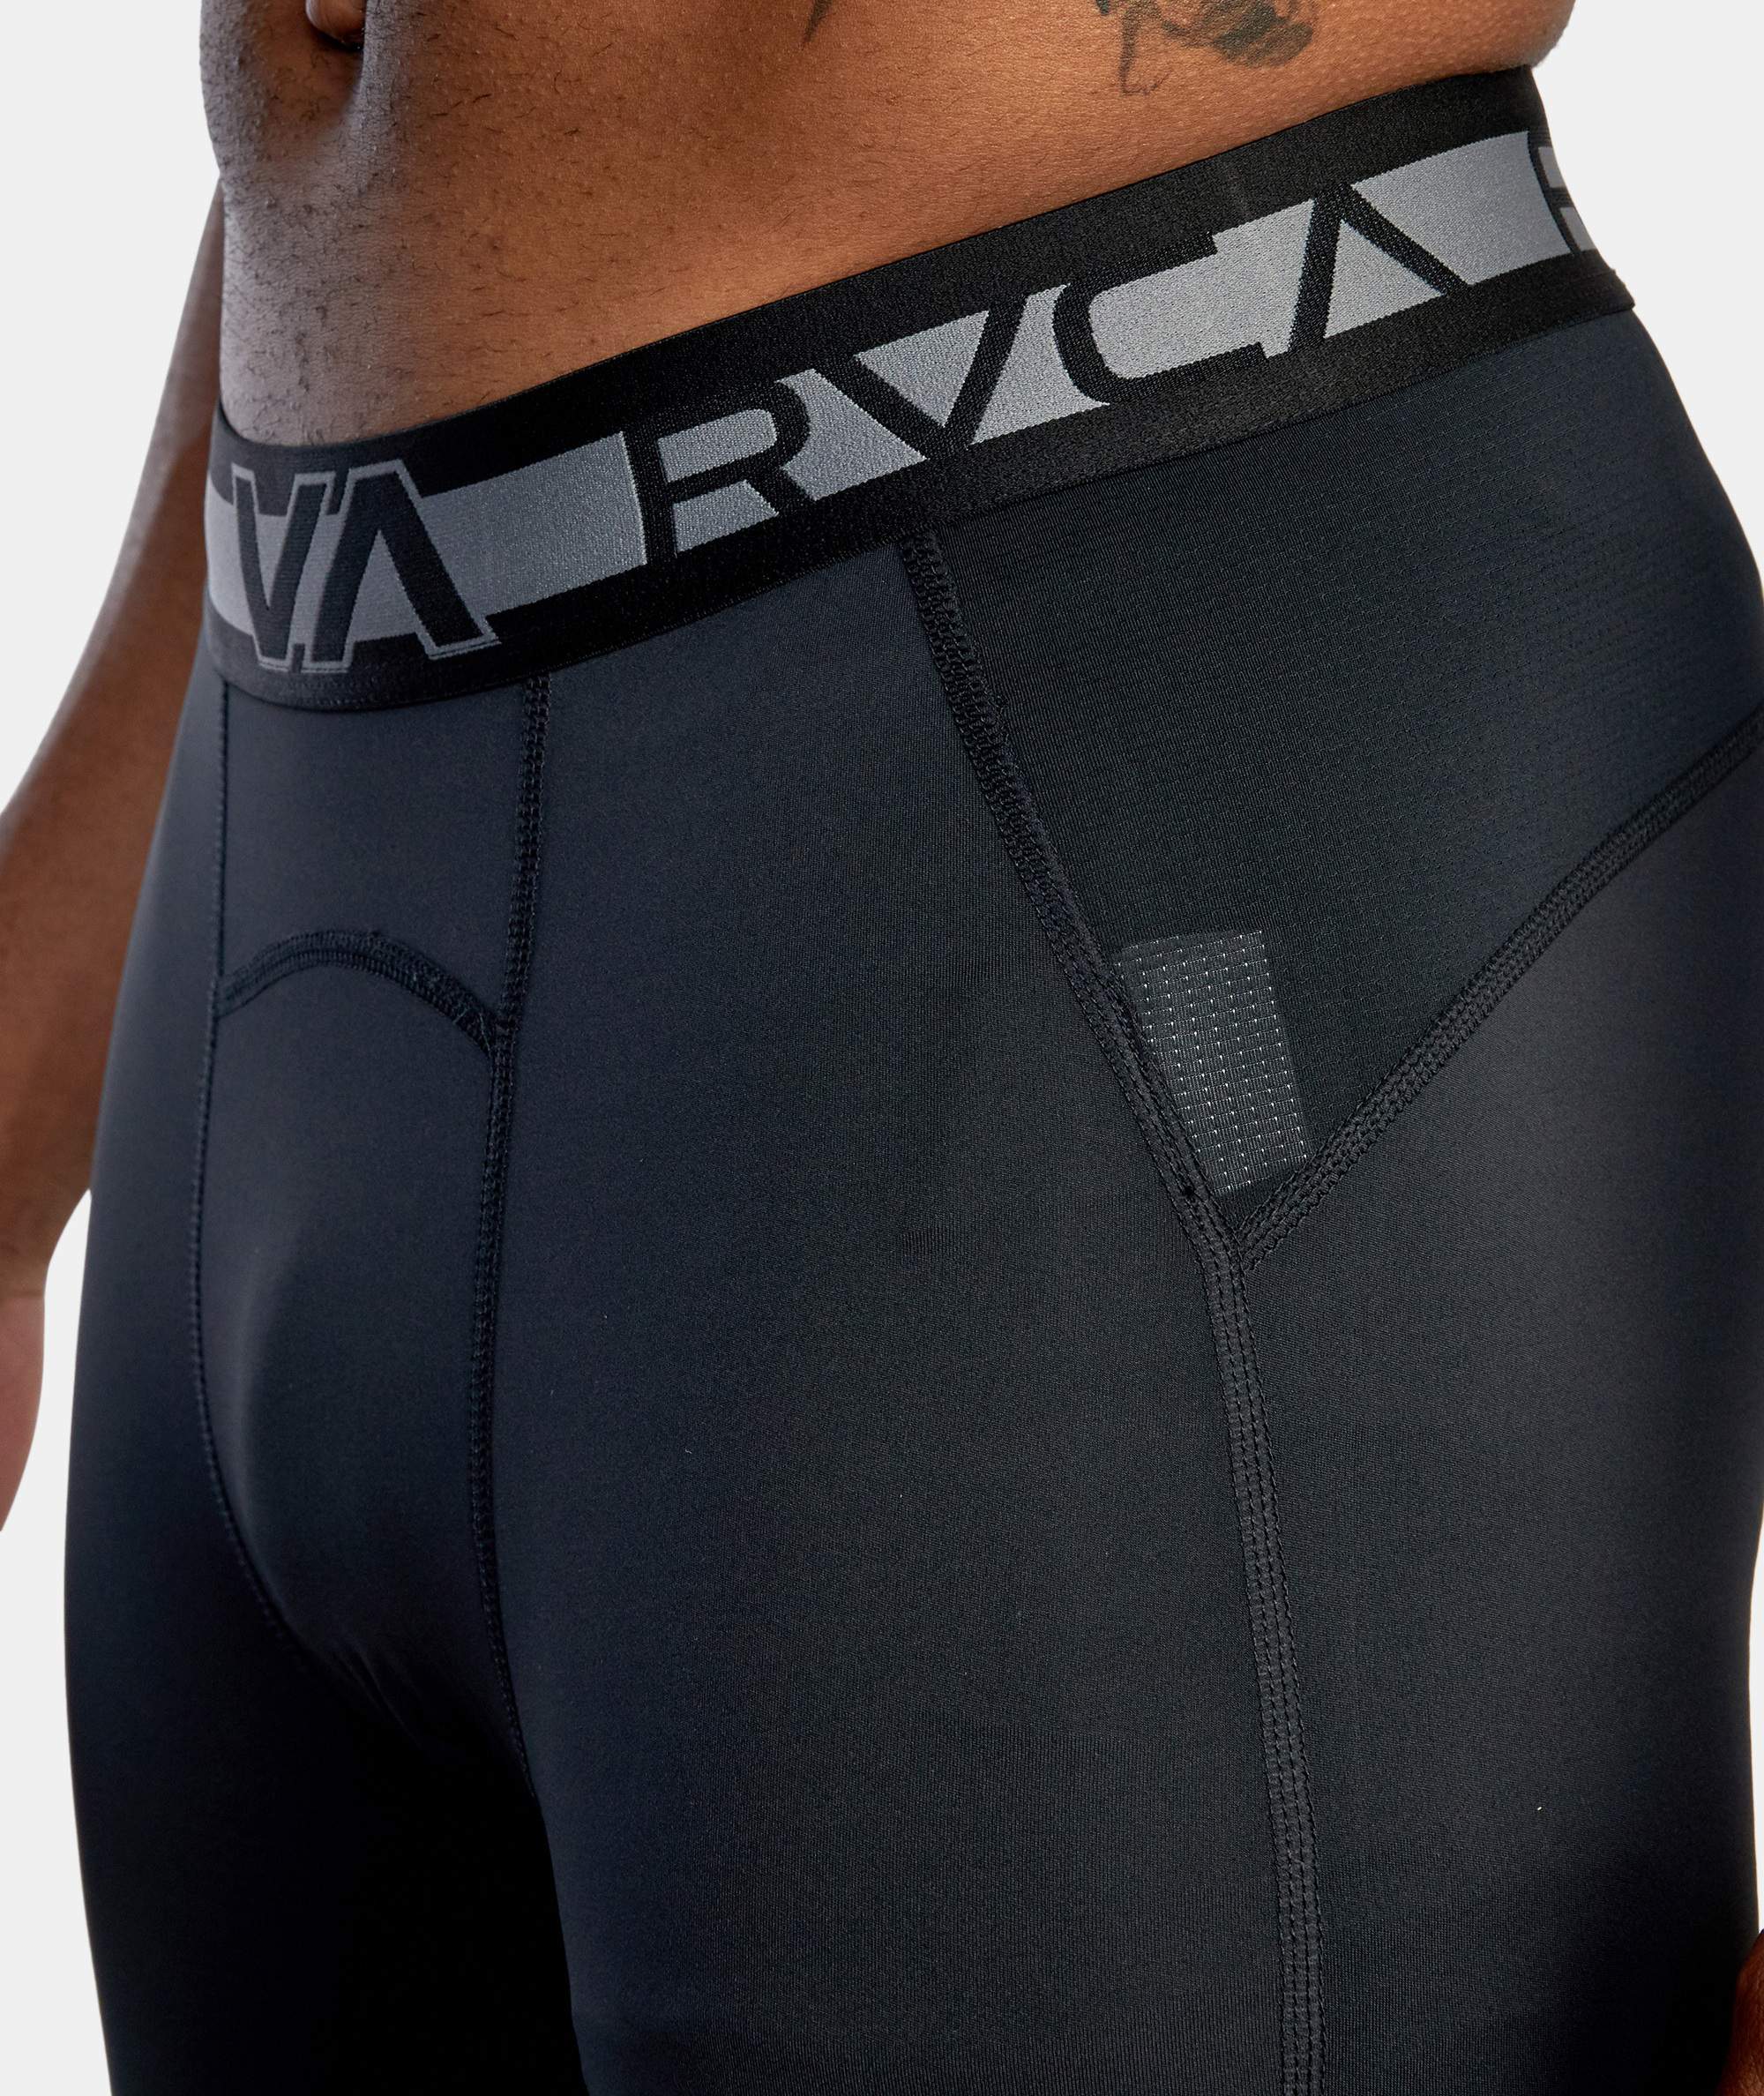 RVCA Compression Sport Pants